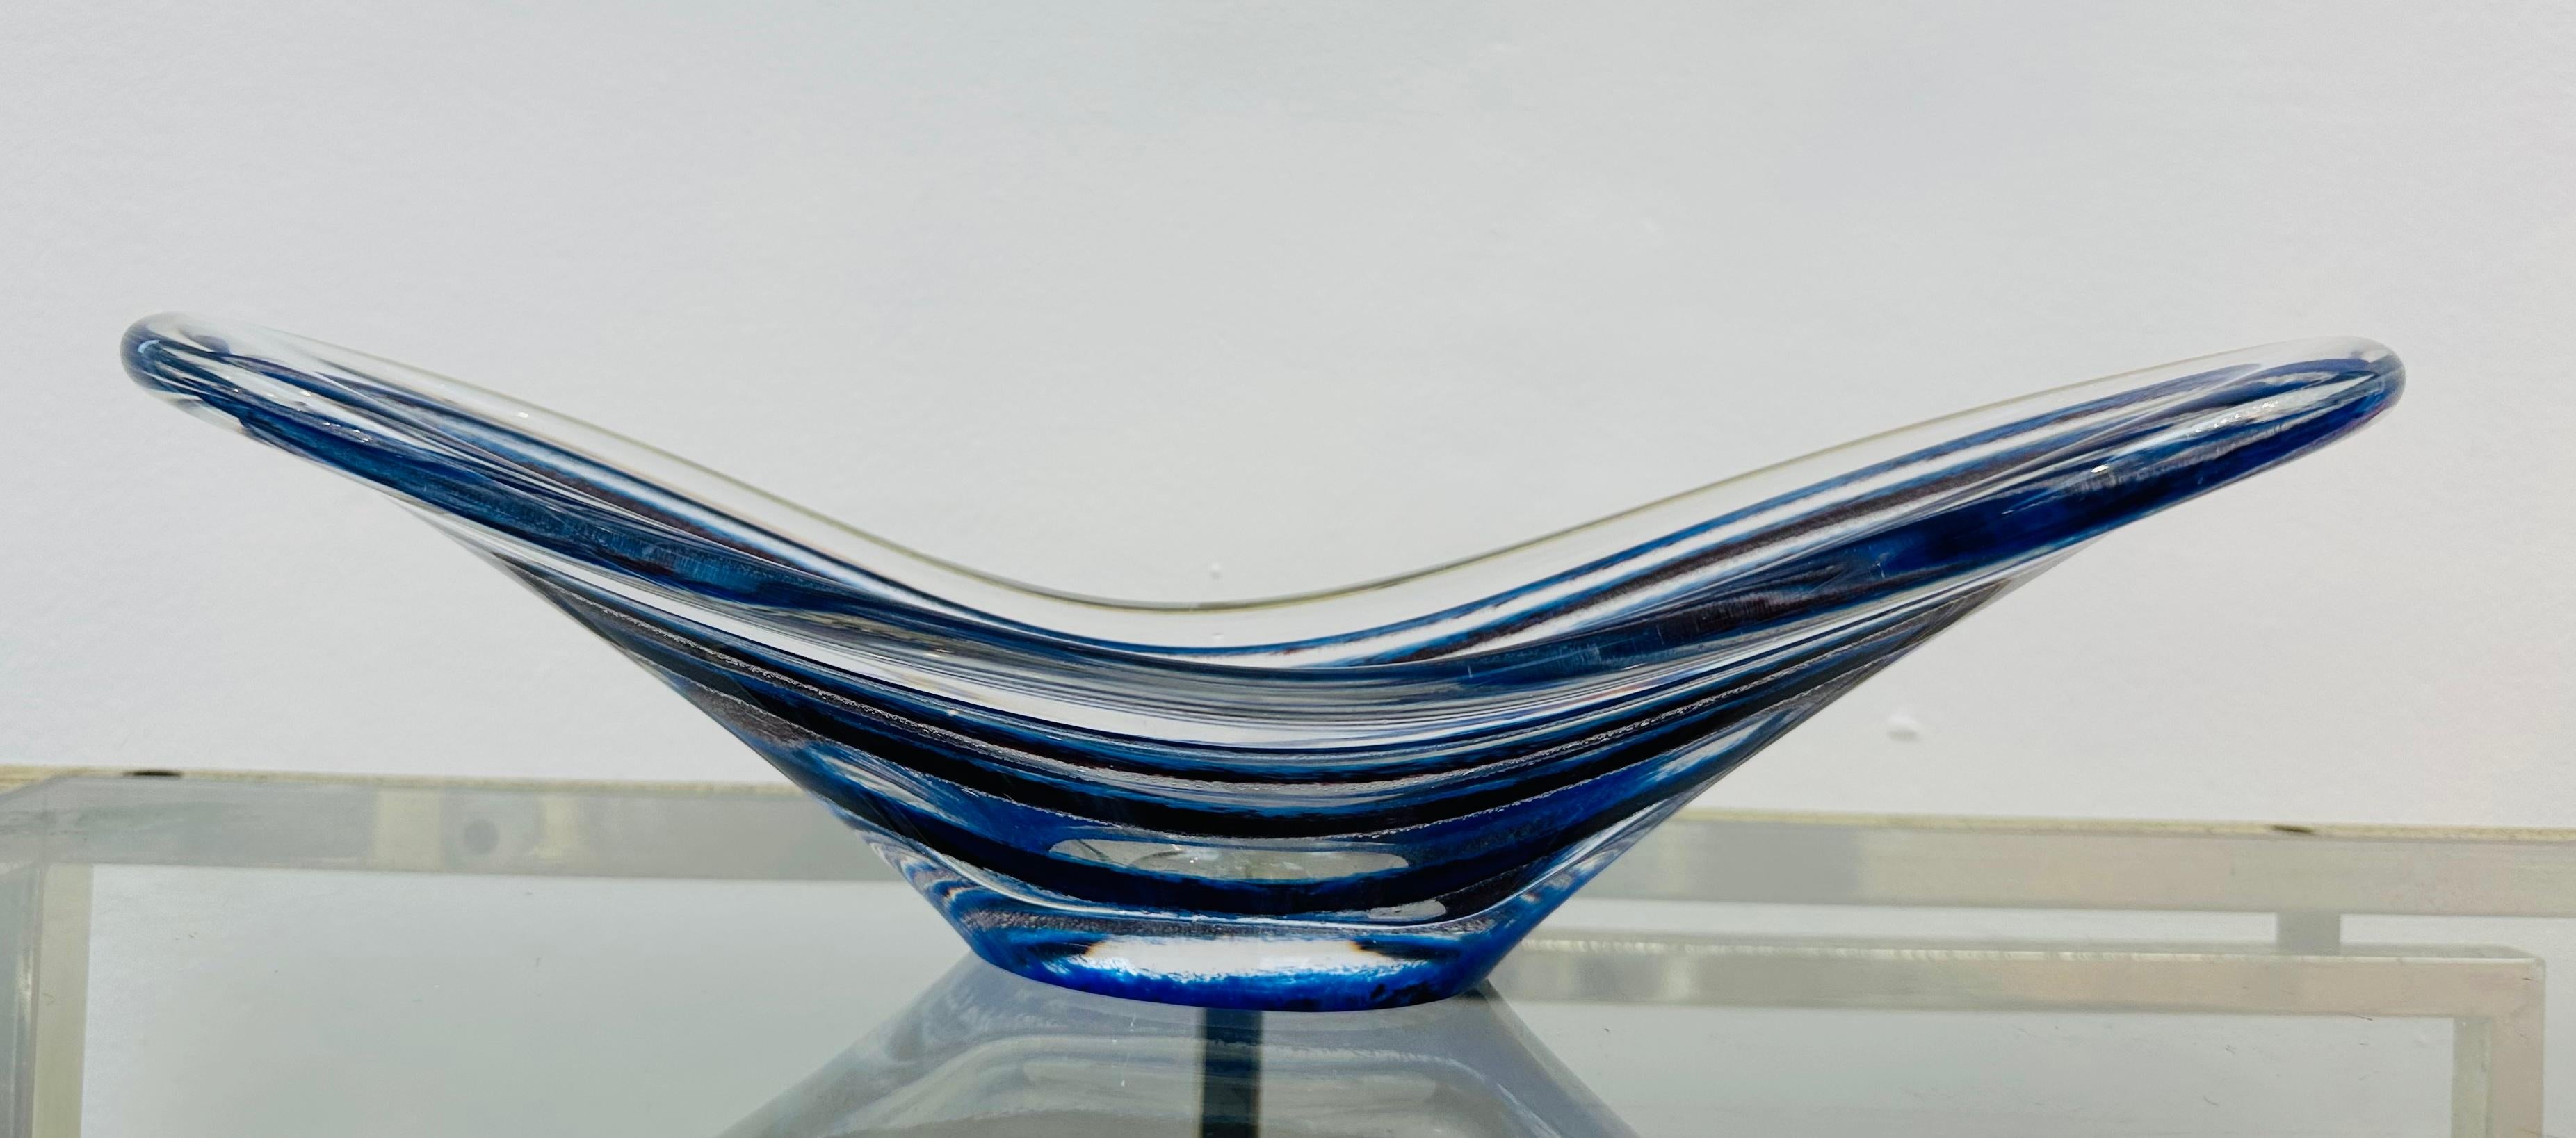 Bol en verre bleu rayé de Vicke Lindstrand pour Kosta, datant des années 1950. Il s'agit d'une pièce magnifique et emblématique du design suédois en verre.

Vicke Lindstrand a été l'une des plus importantes conceptrices de verre du XXe siècle. Il